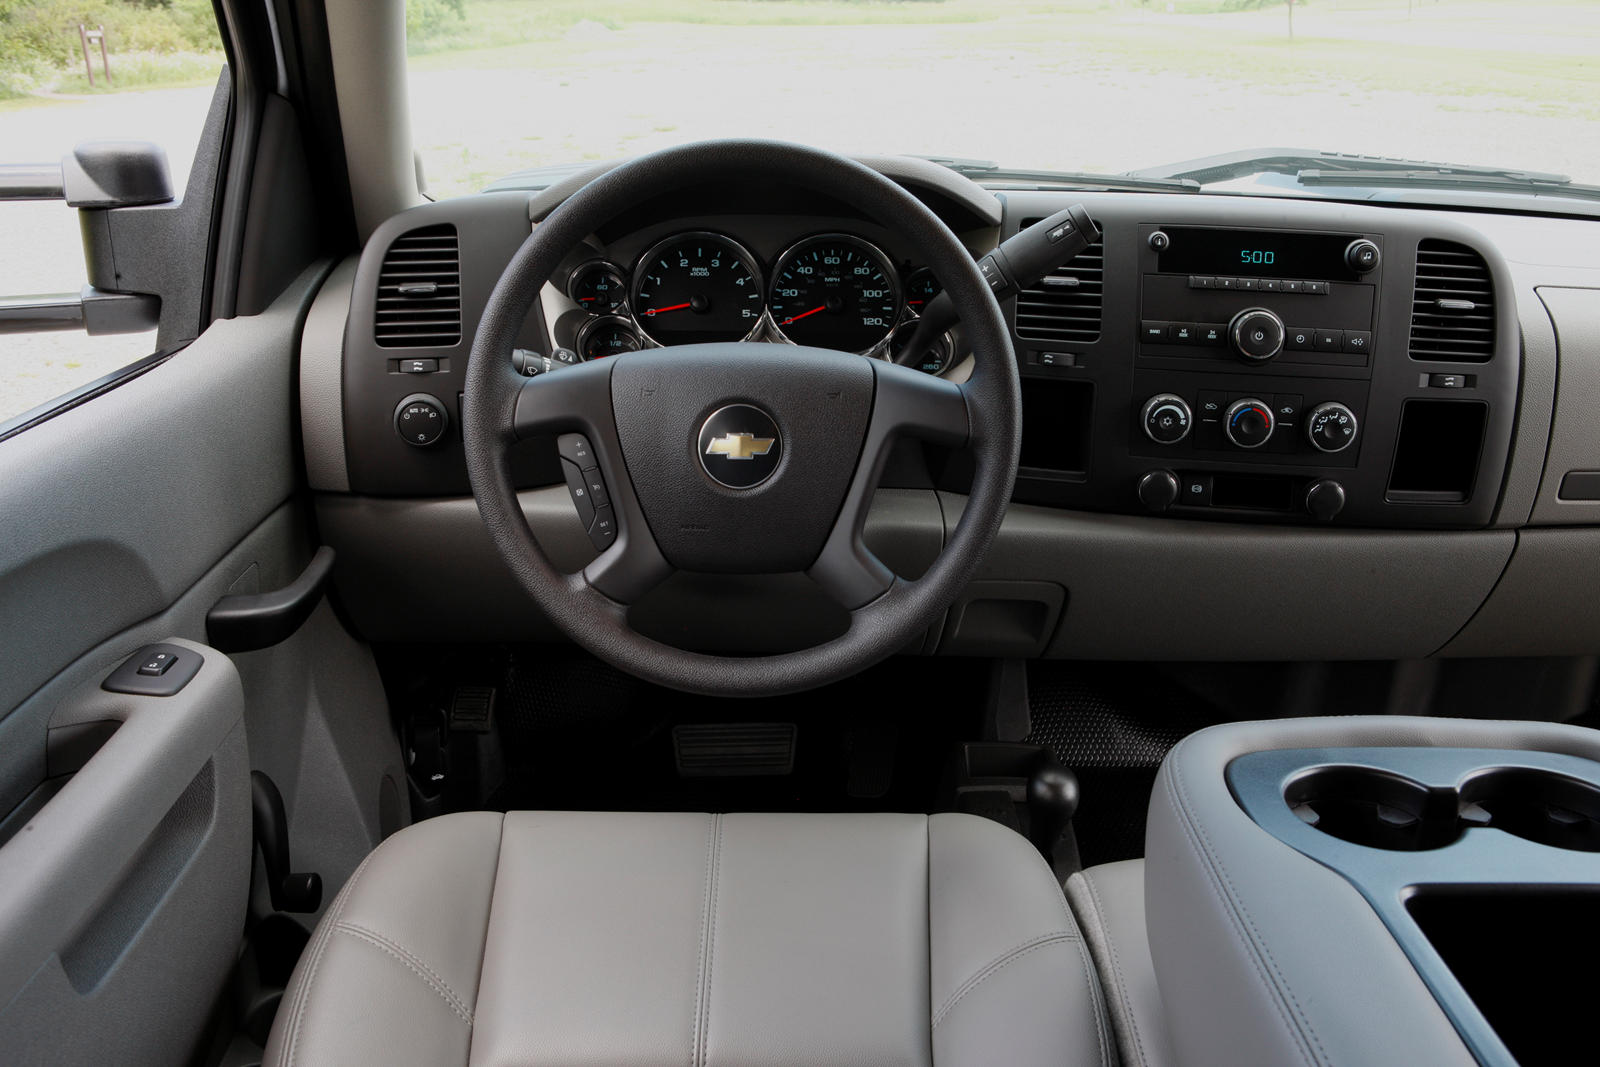 2014 Chevrolet Silverado 2500HD Steering Wheel